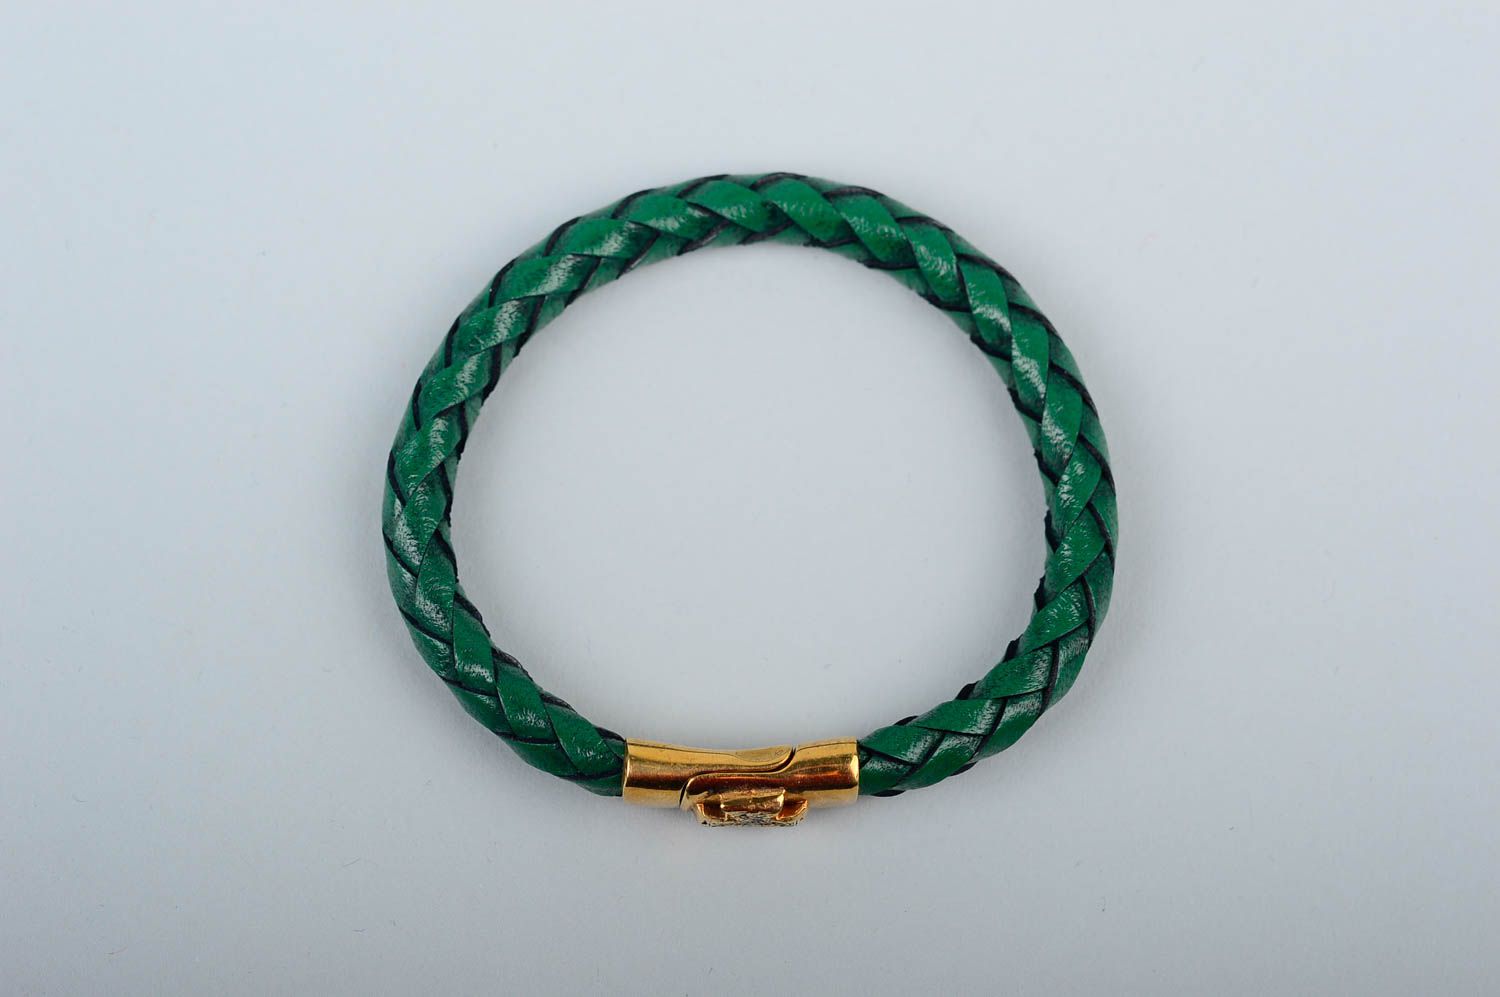 Кожаный браслет хэнд мэйд браслет на руку зеленый плетеный украшение из кожи фото 3